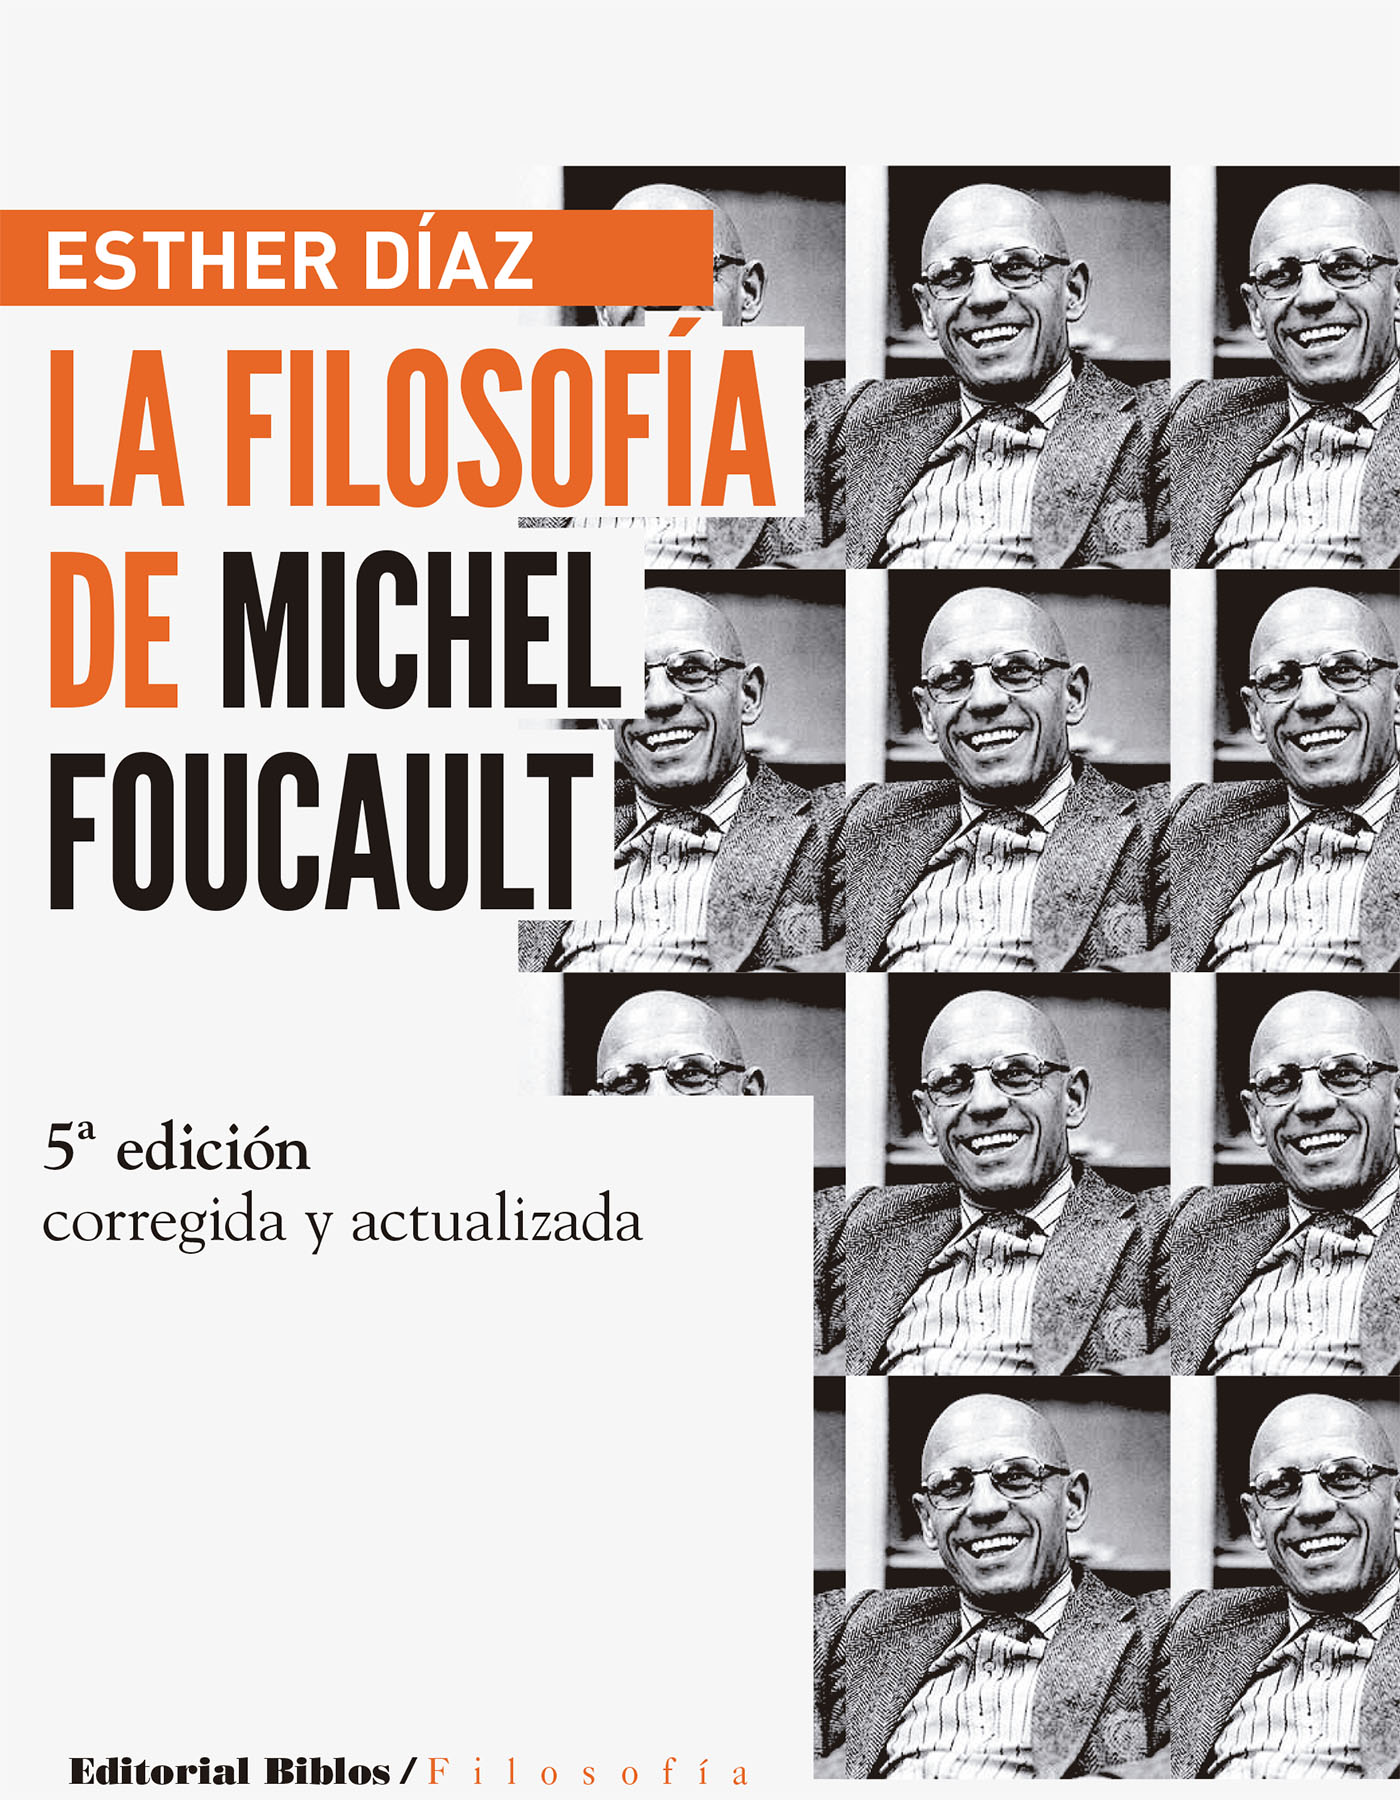 La FilosofÍa De Michel Foucault Ebook Esther Diaz Descargar Libro